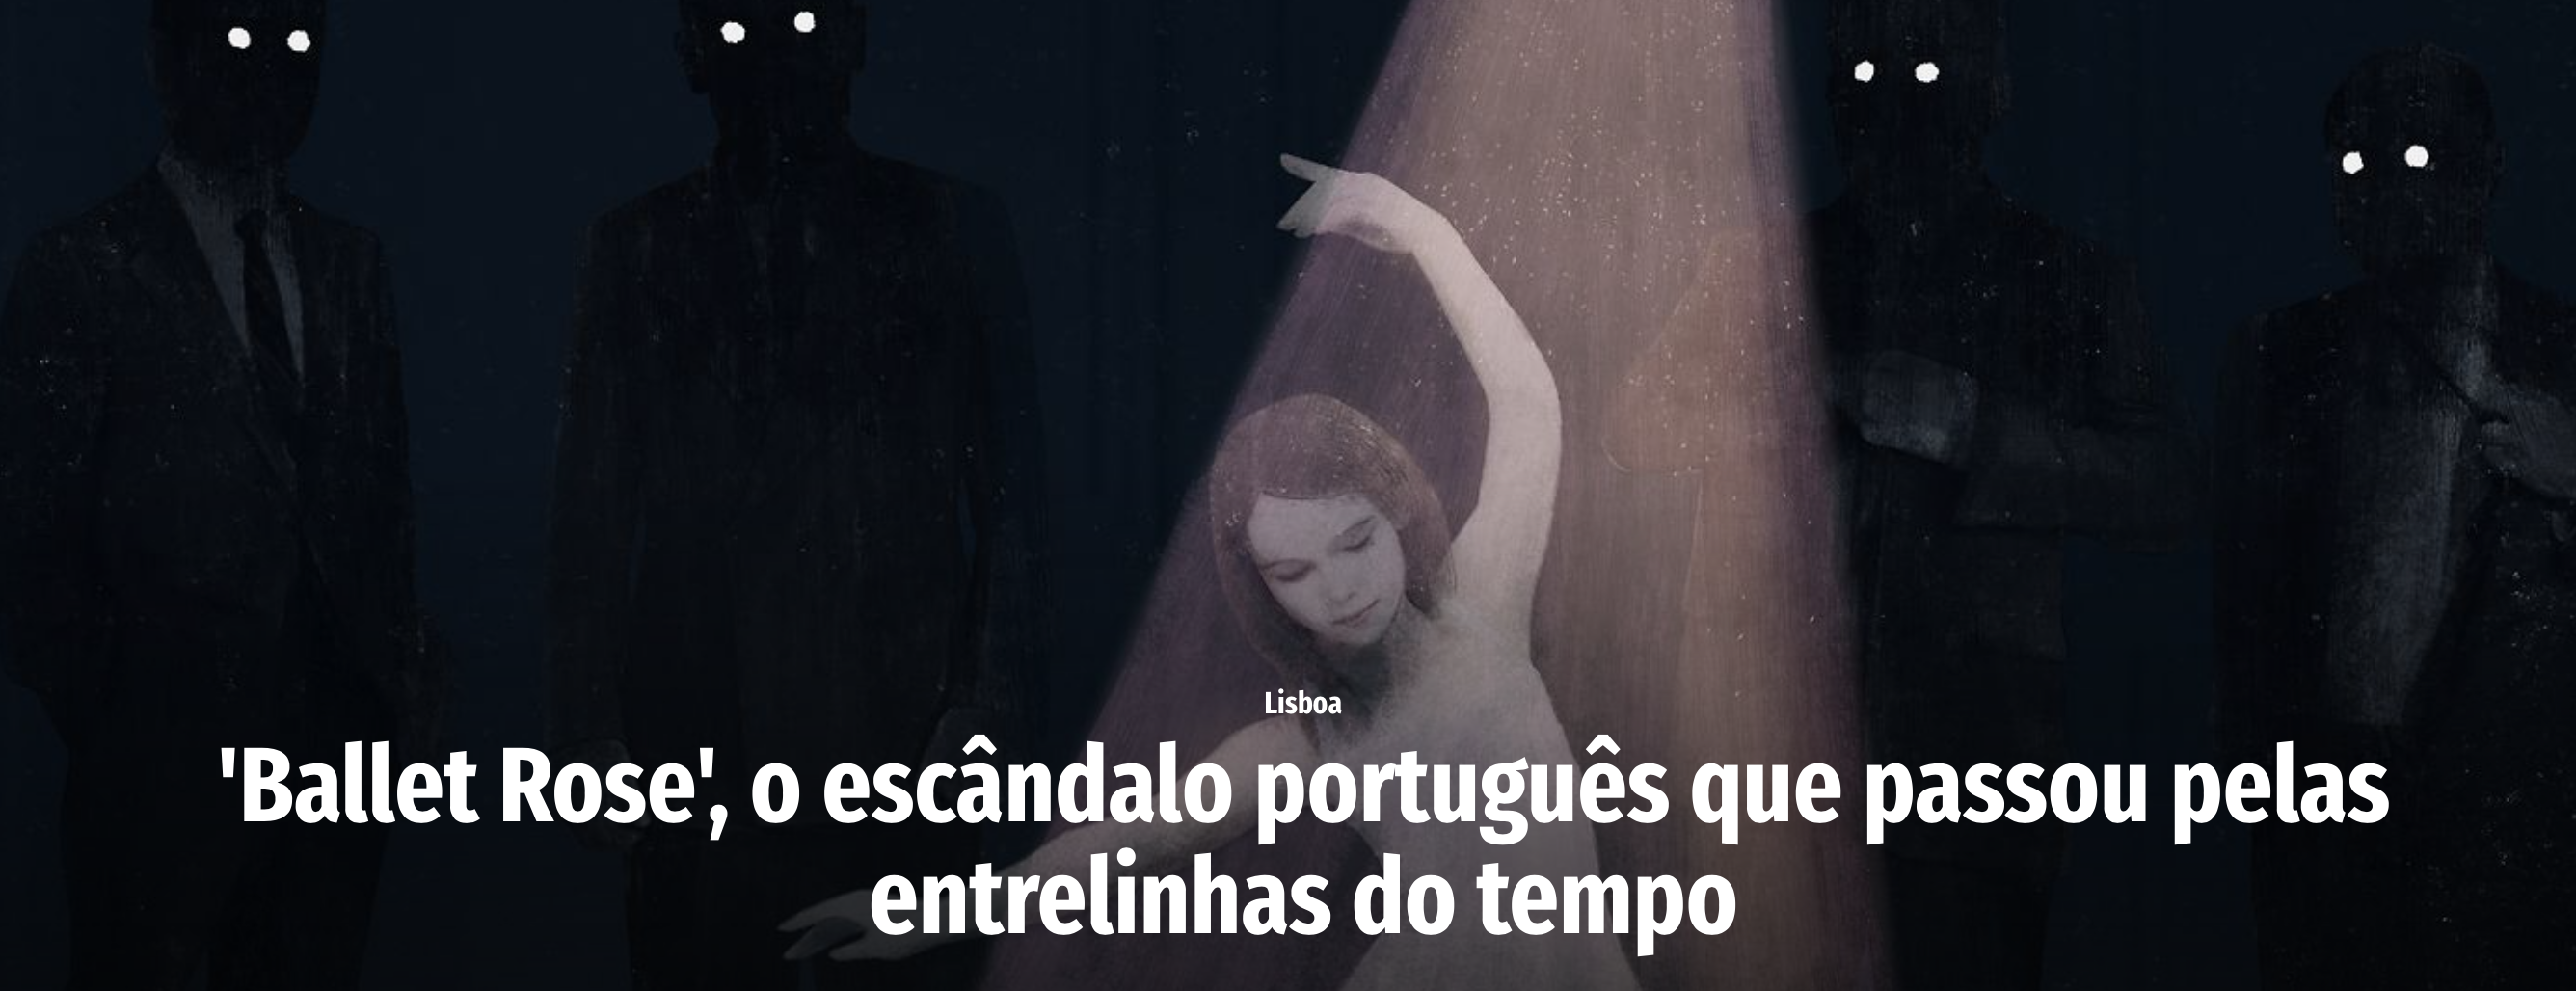 "'Ballet Rose', o escândalo português que passou pelas entrelinhas do tempo"